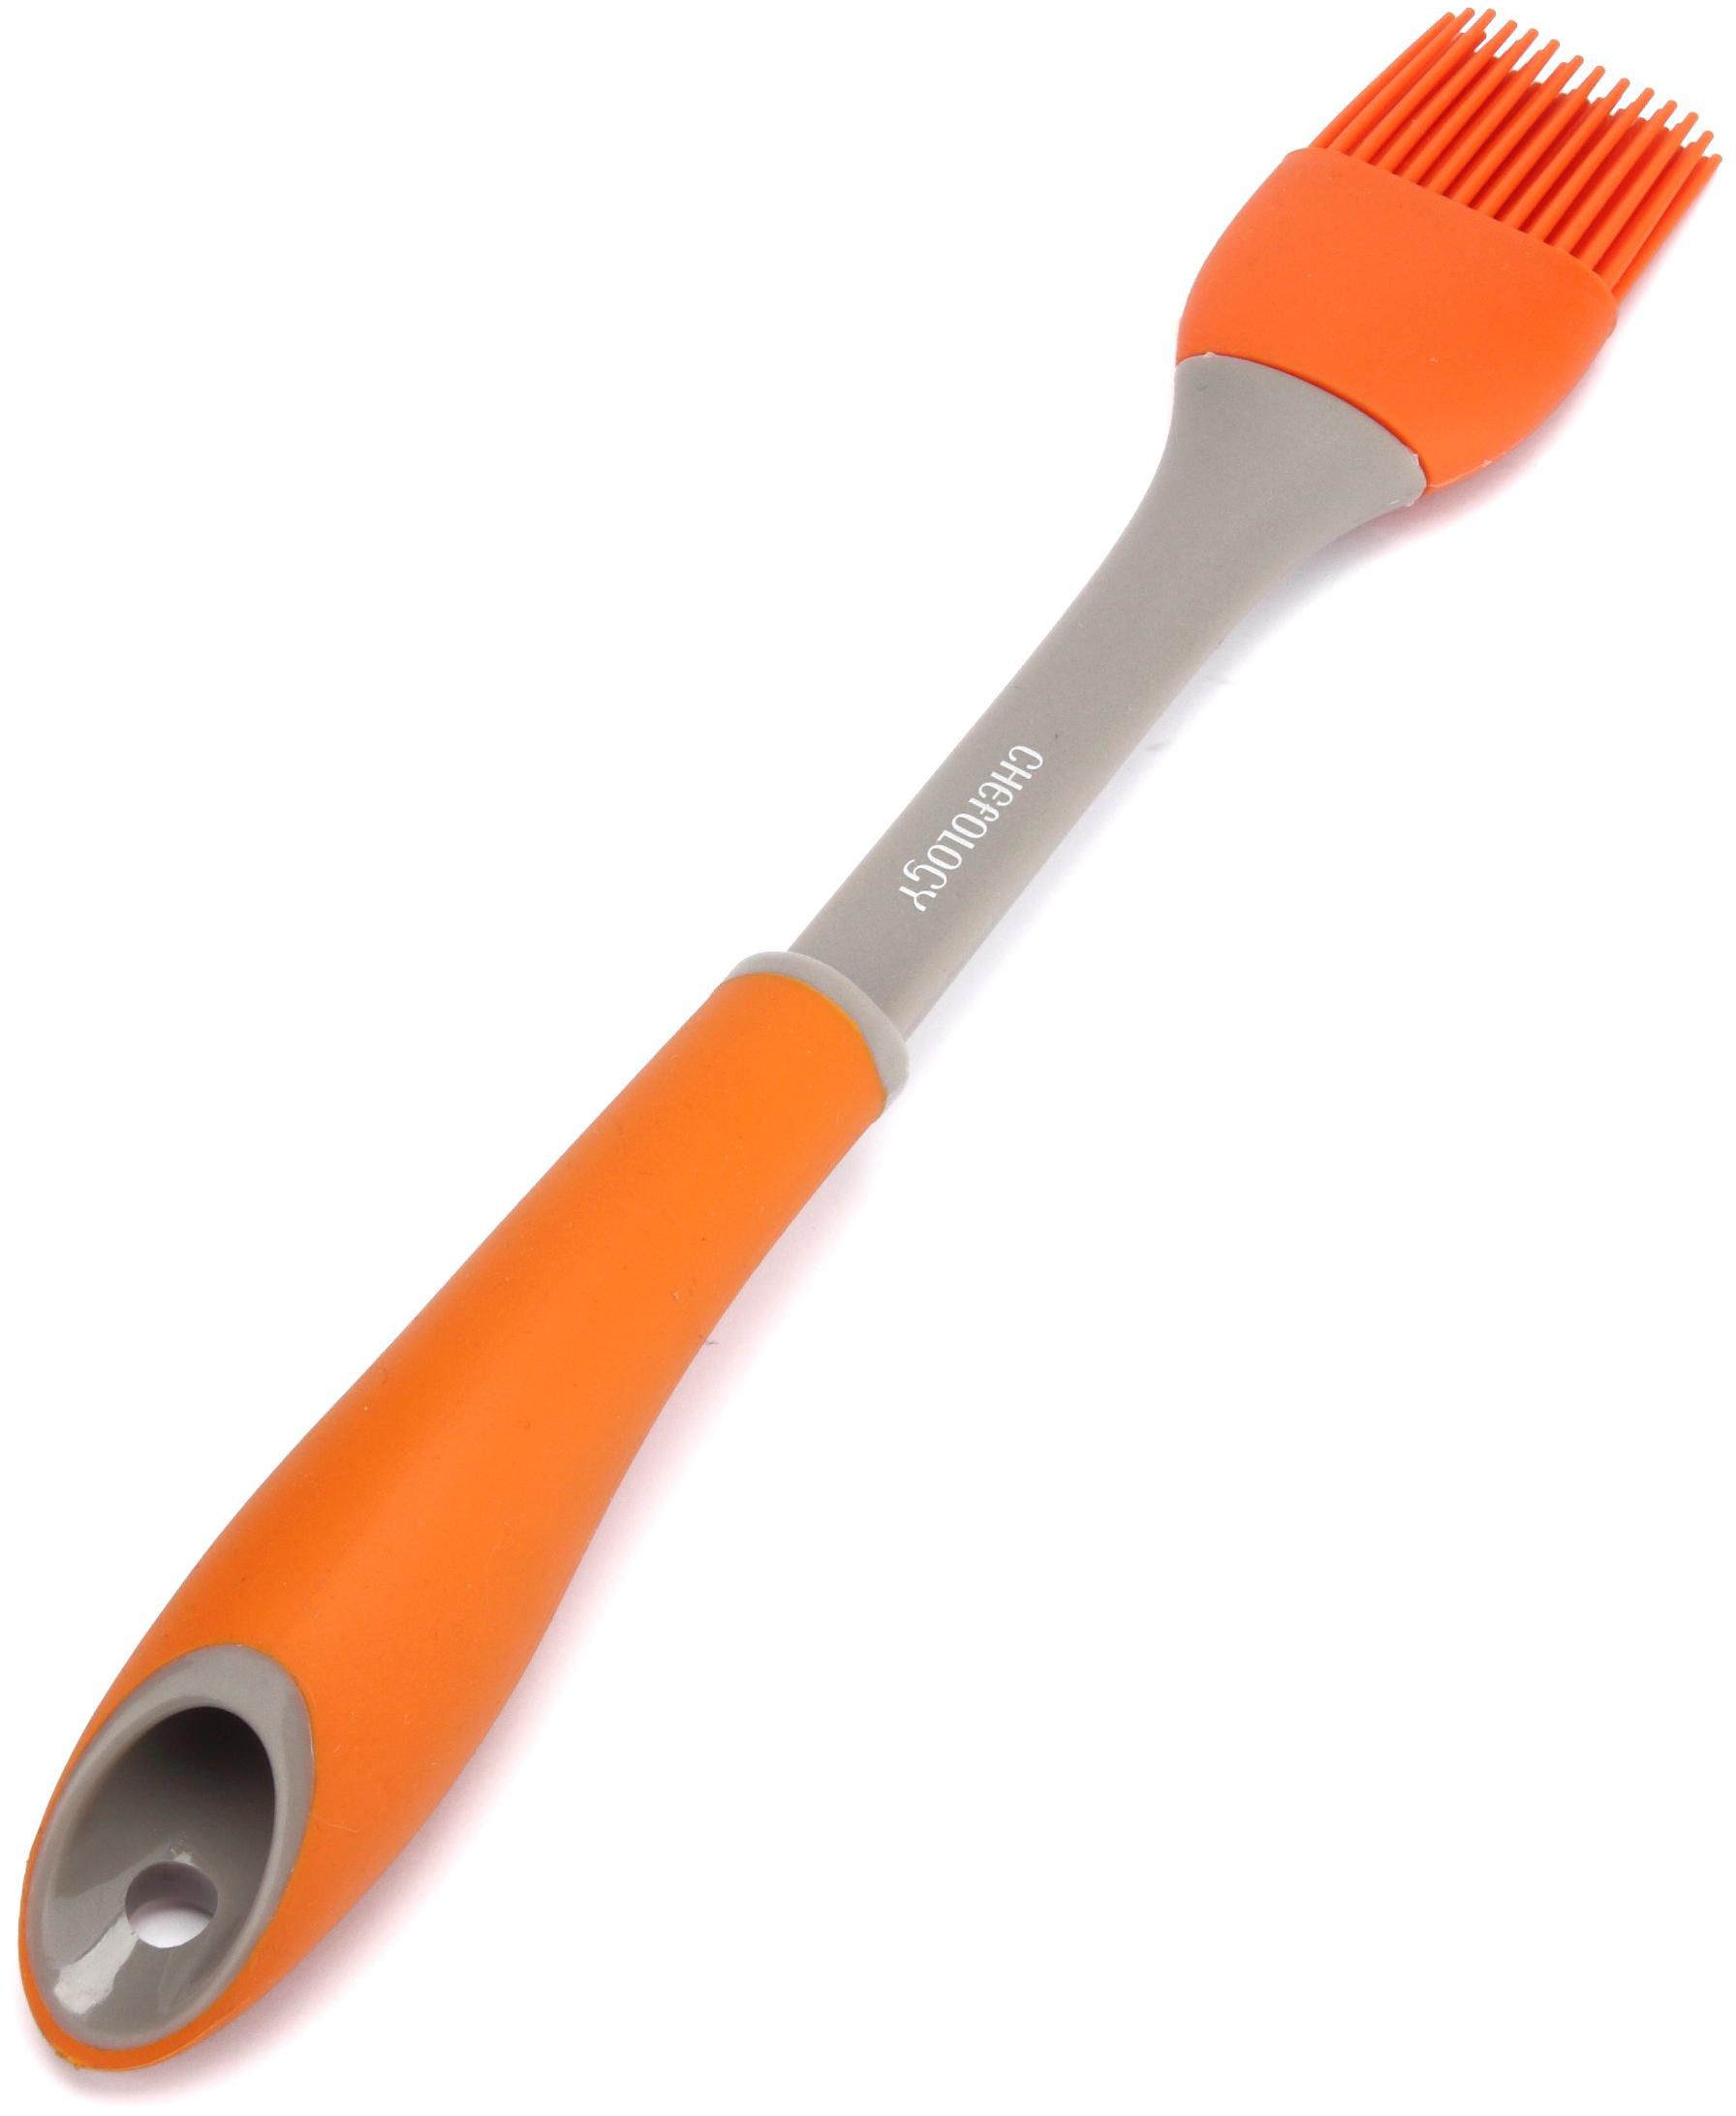 Chefology Silicone Brush (Orange)